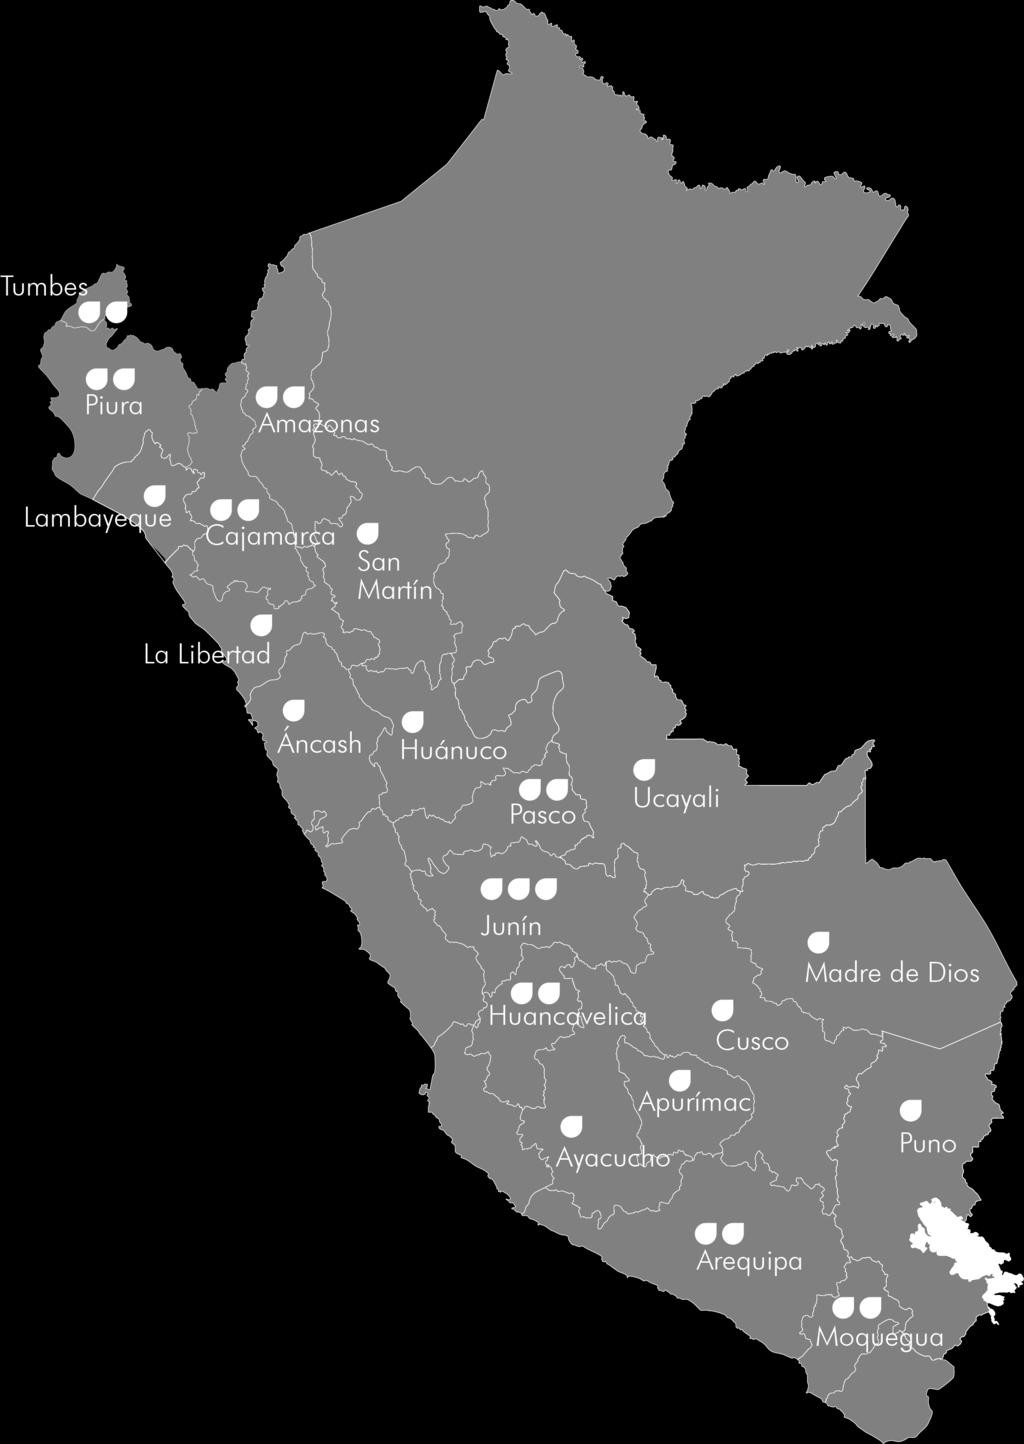 Desempeño de los Gobiernos Regionales PLANEFA 24 Gobiernos Regionales aprobaron su PLANEFA en el 201